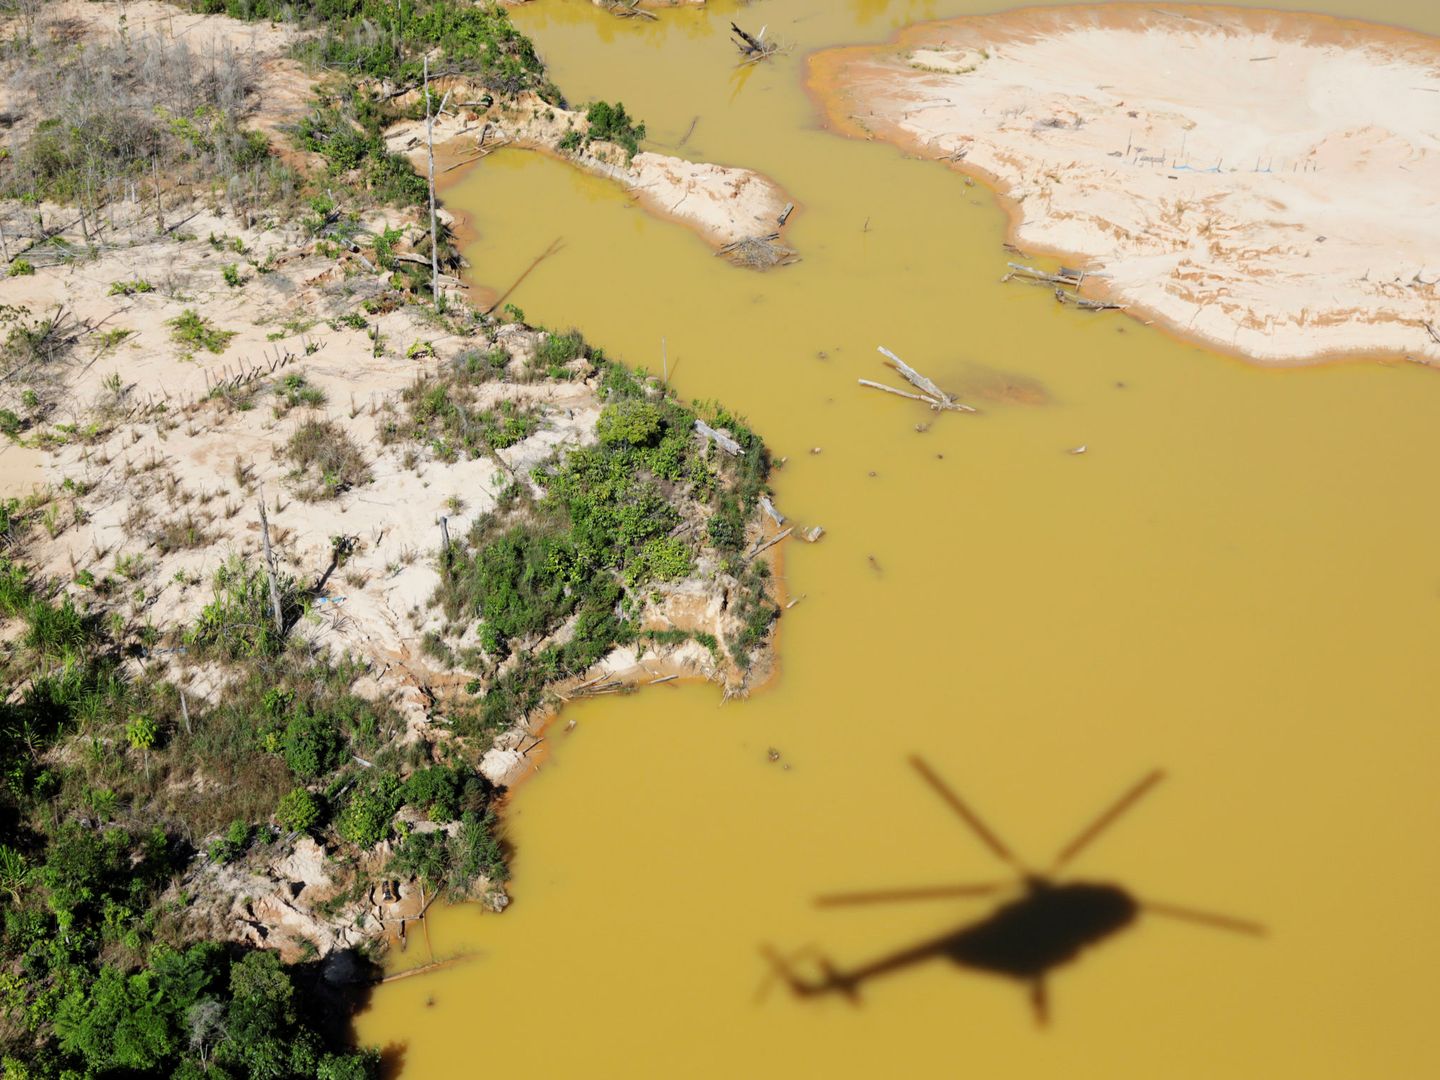 Vista aérea de una zona de Madre de Dios fuertemente afectada por la minería ilegal. (Reuters/Guadalupe Pardo)